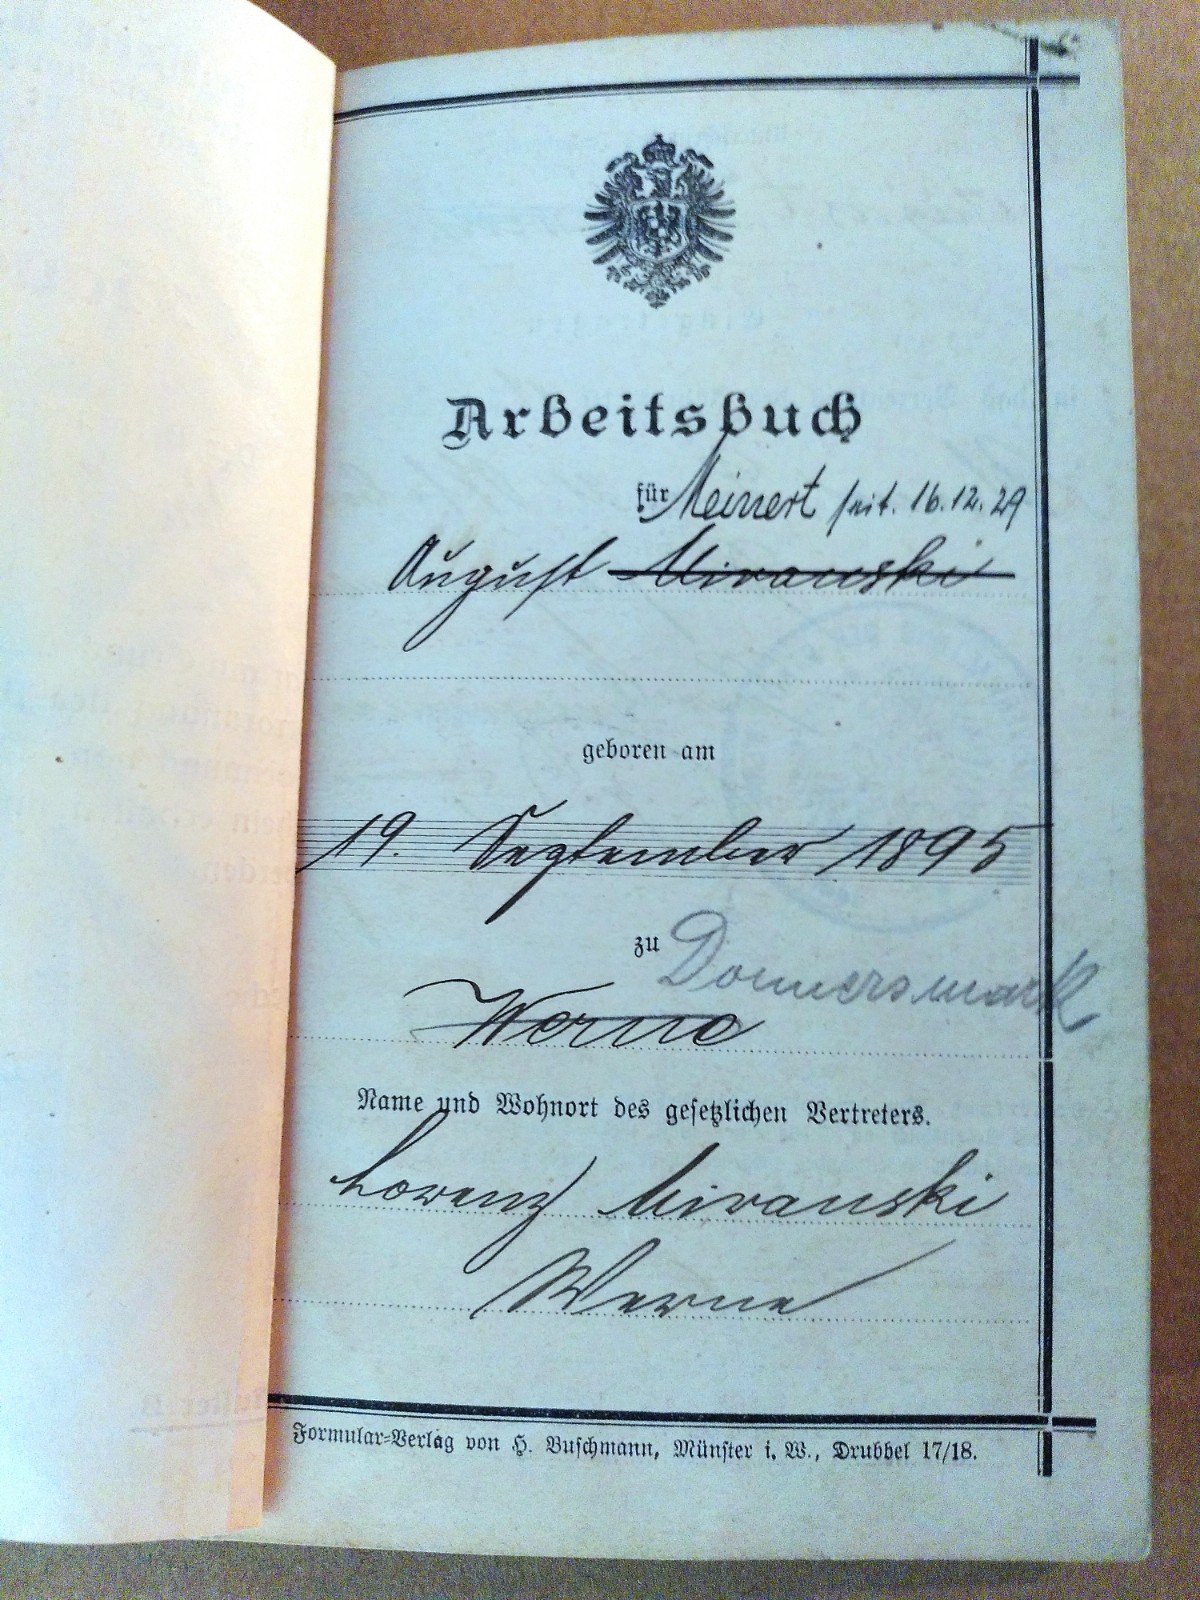 Arbeitsbuch von August Miranski. Foto Stadtmuseum Werne